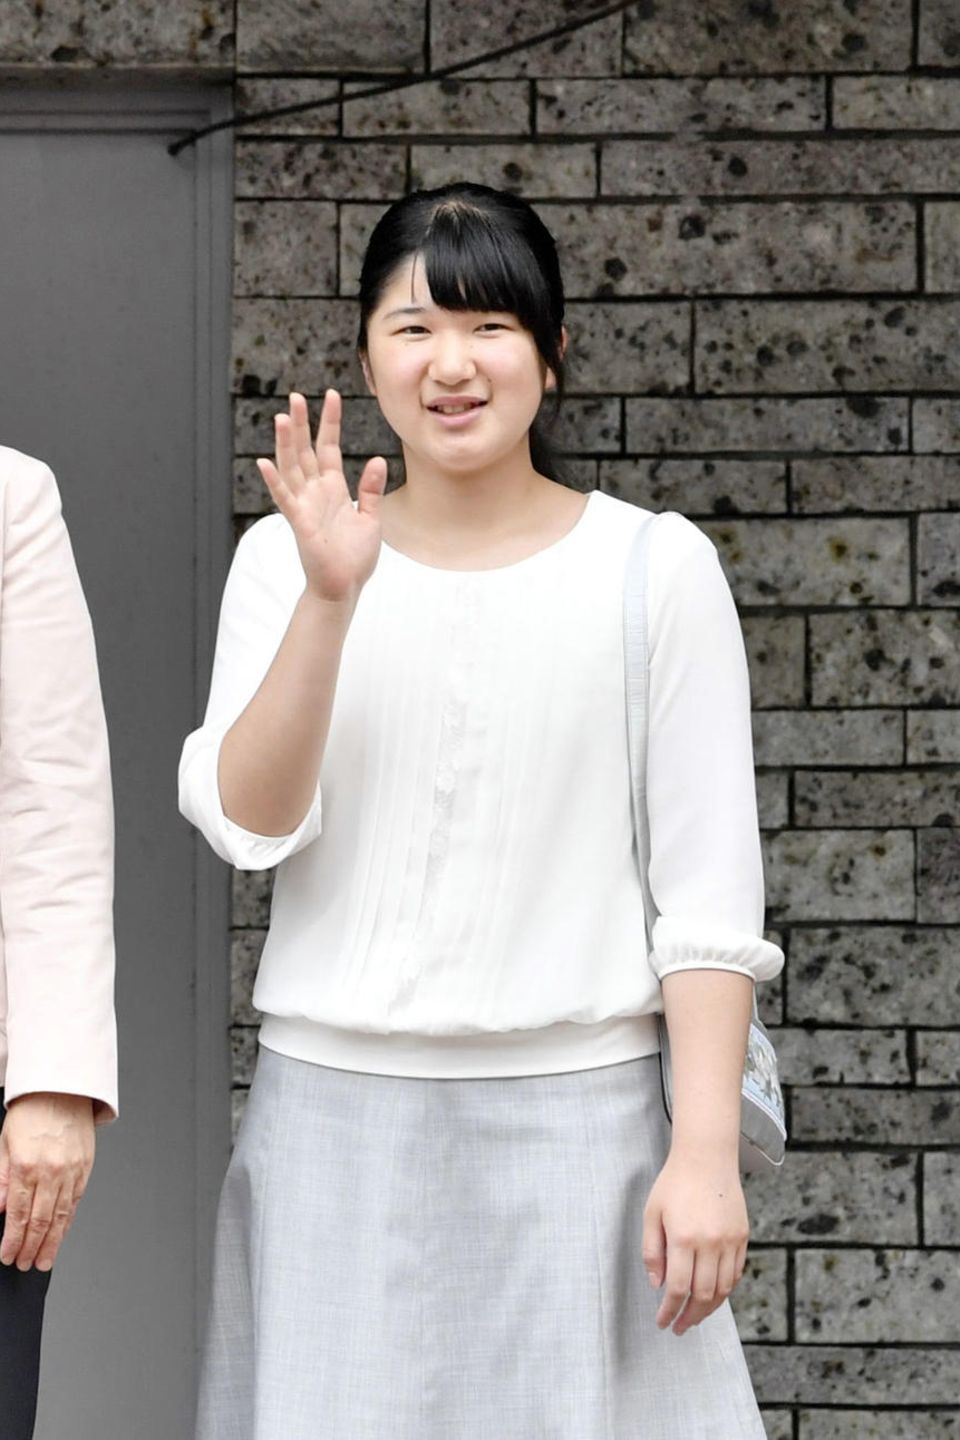 Prinzessin Aiko - hier mit ihren Eltern Prinz Naruhito und Prinzessin Masako - arbeitet sich langsam in ihre royalen Pflichten ein und begleite ihre Eltern ab und an schon zu Terminen. Am 1. Mai 2019 werden Naruhito und Masako zum Kaiserpaar ernannt.